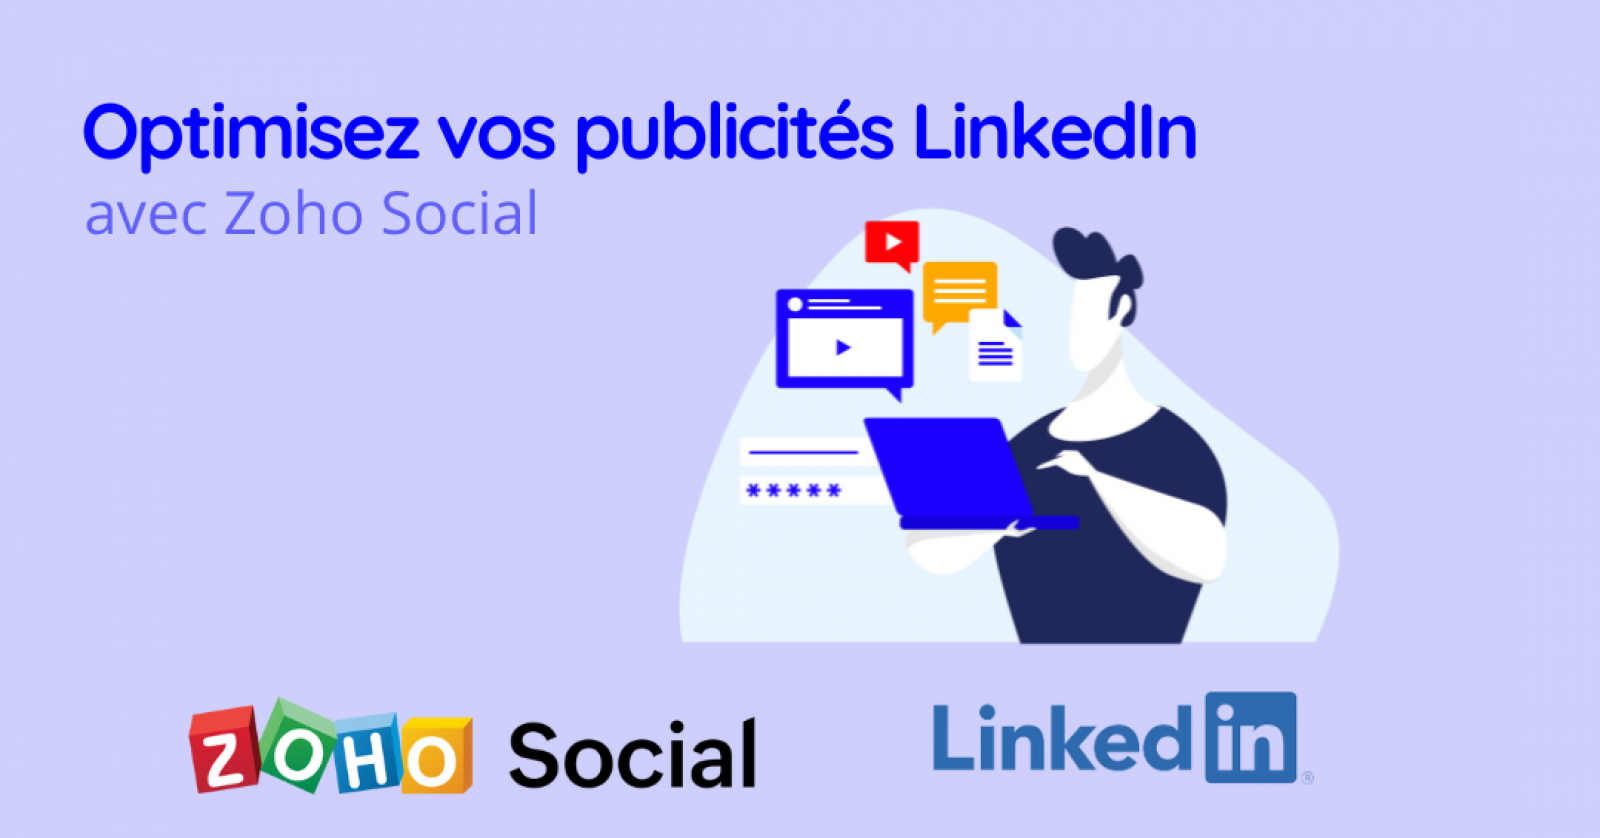 Optimisez vos publicités LinkedIn avec Zoho Social